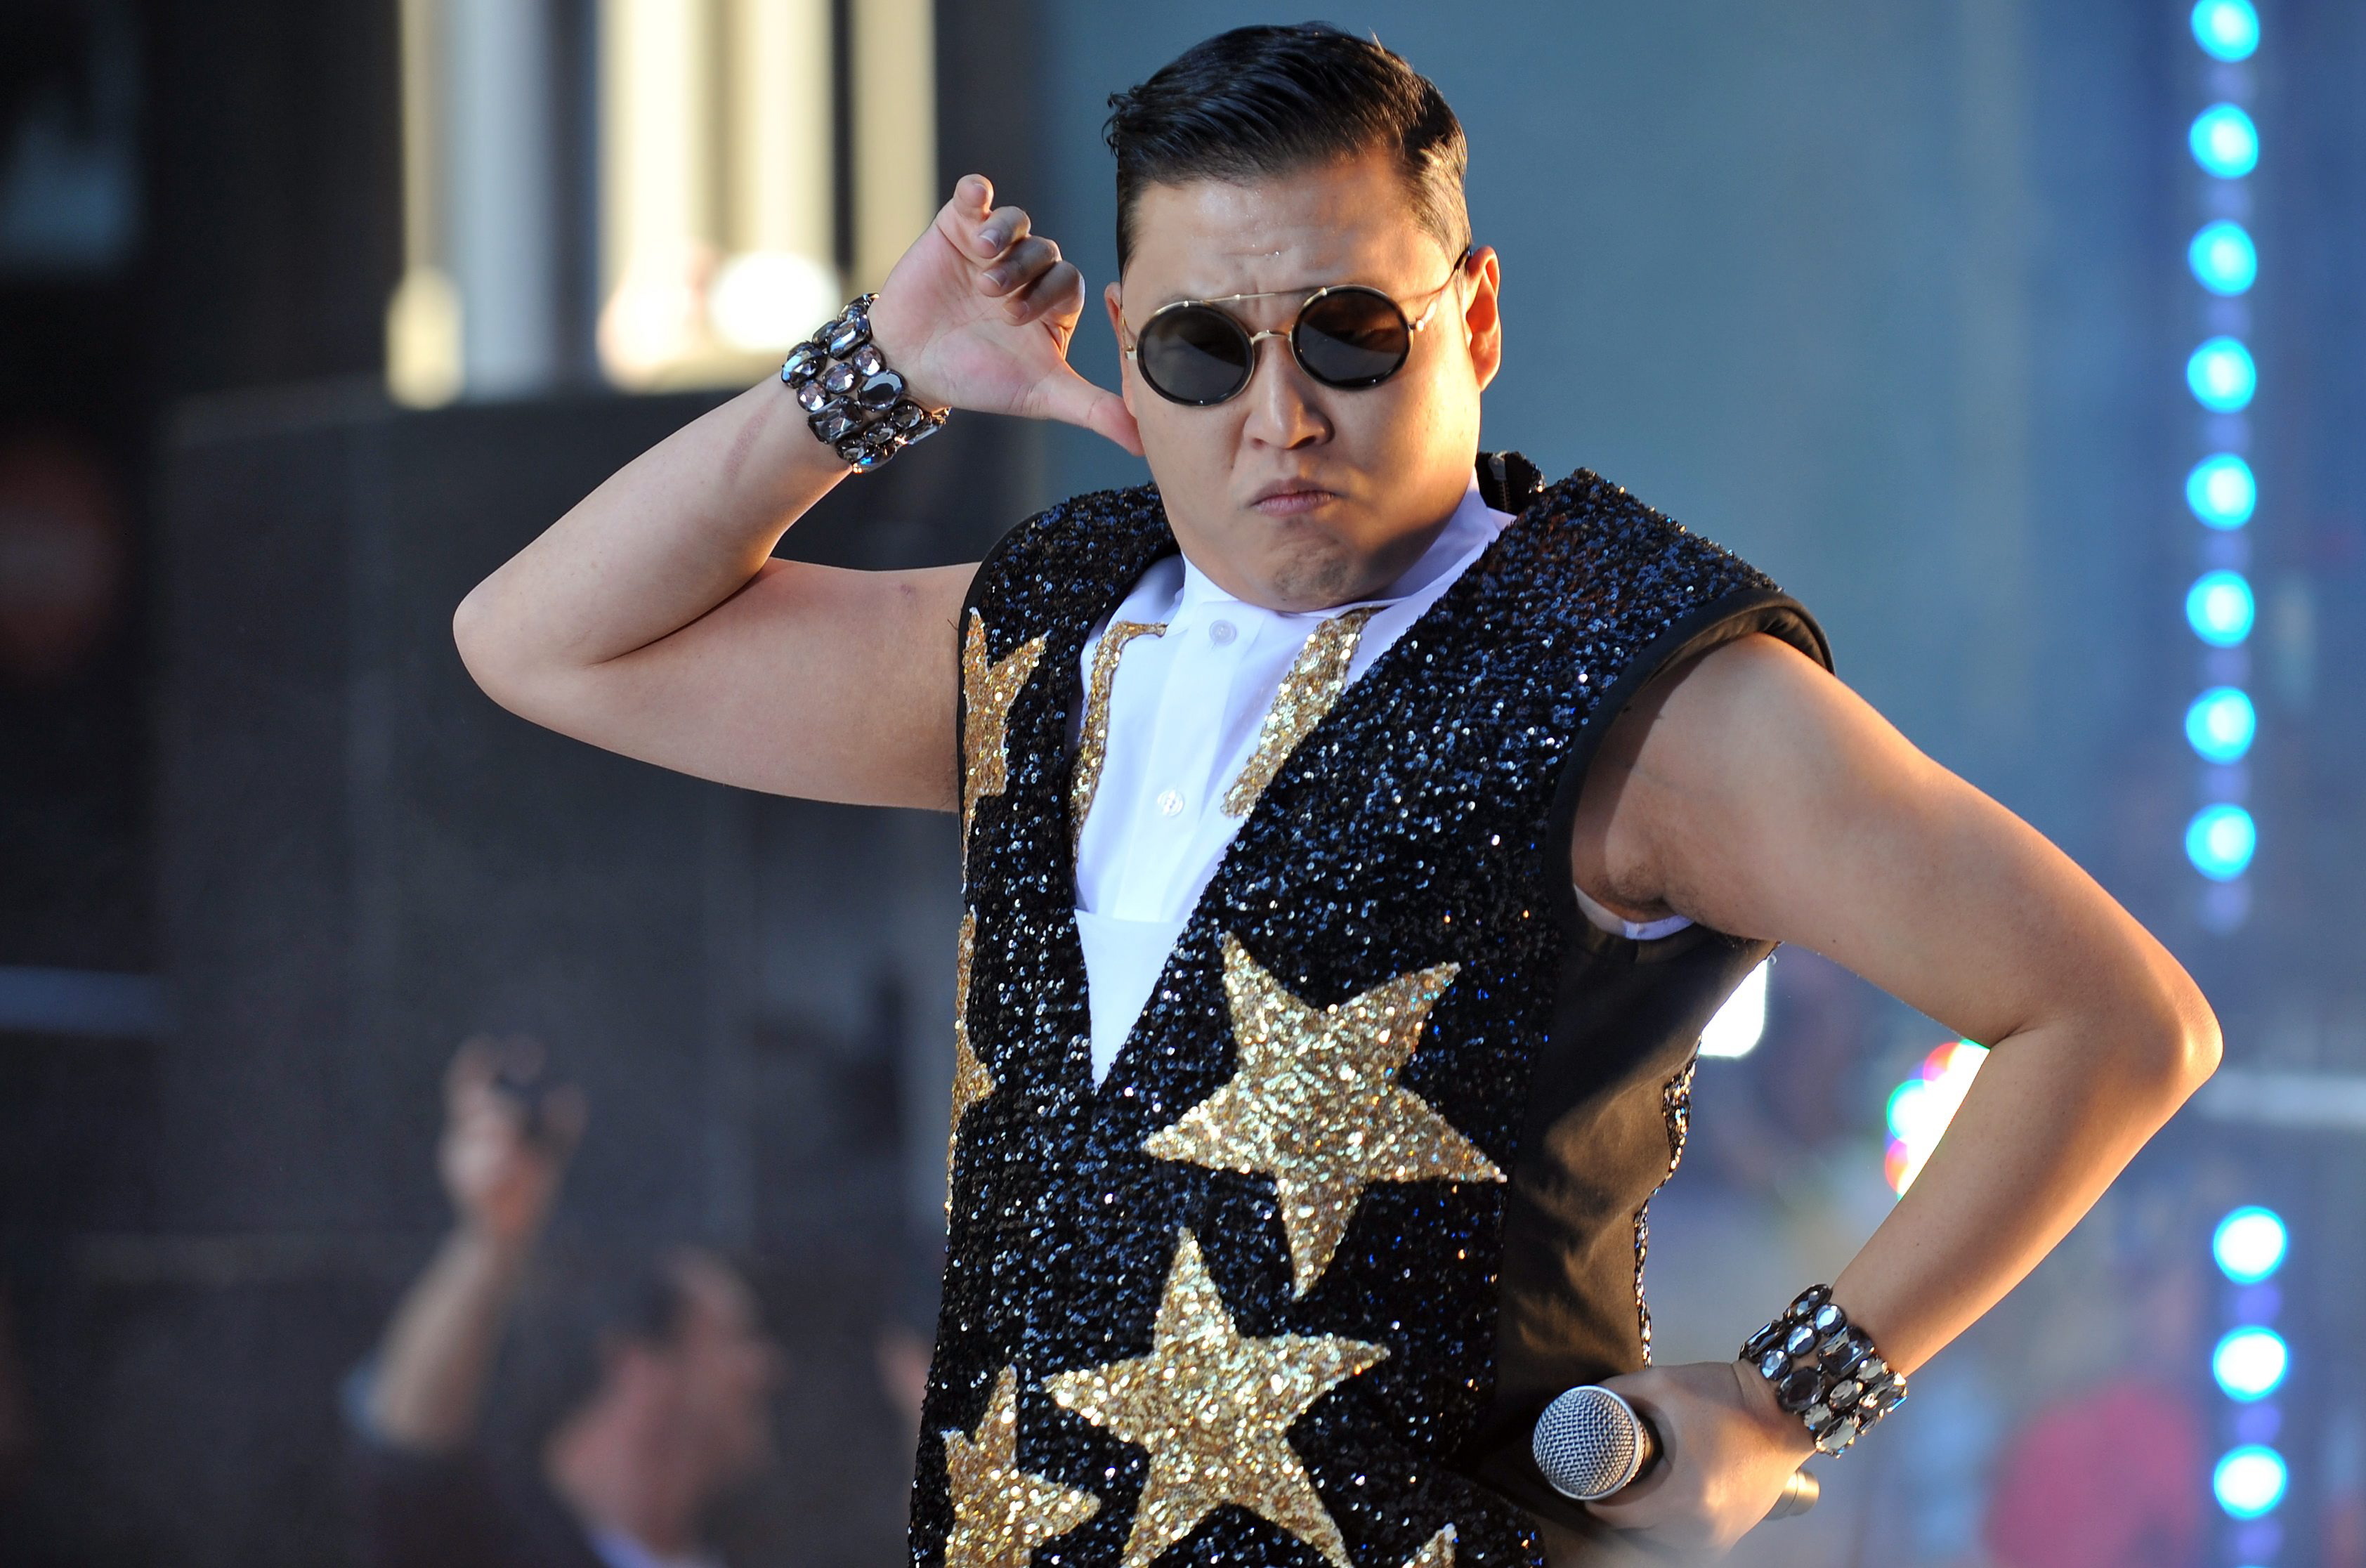 Der Künstler PSY tanzt zu seinem Hit Gangnam Style | picture alliance / dpa